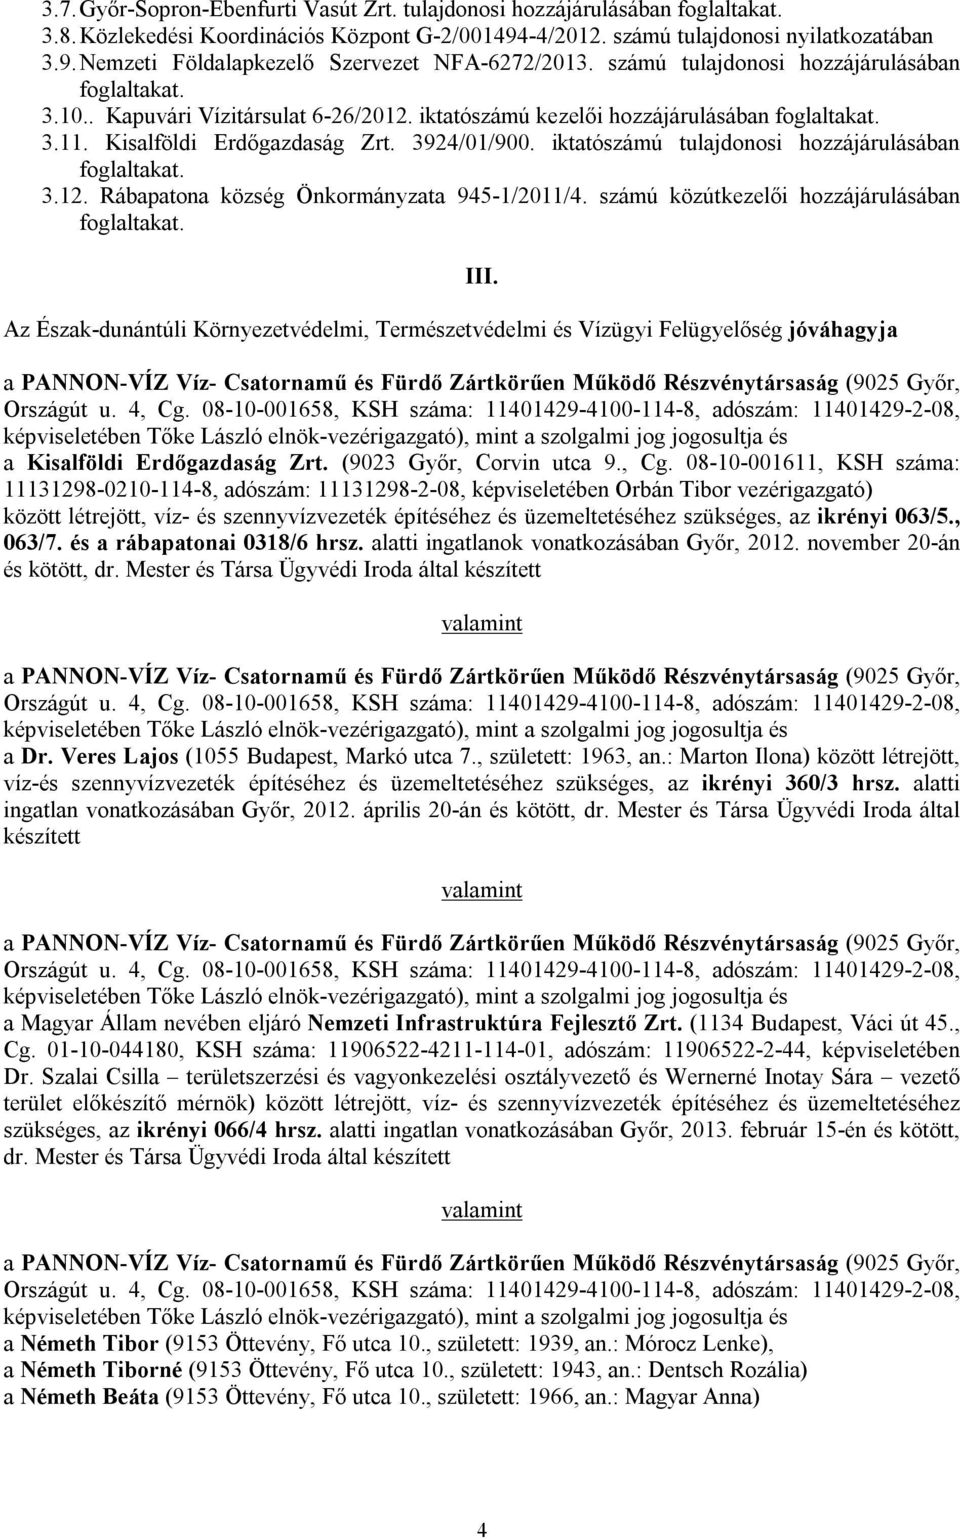 iktatószámú tulajdonosi hozzájárulásában foglaltakat. 3.12. Rábapatona község Önkormányzata 945-1/2011/4. számú közútkezelői hozzájárulásában foglaltakat.